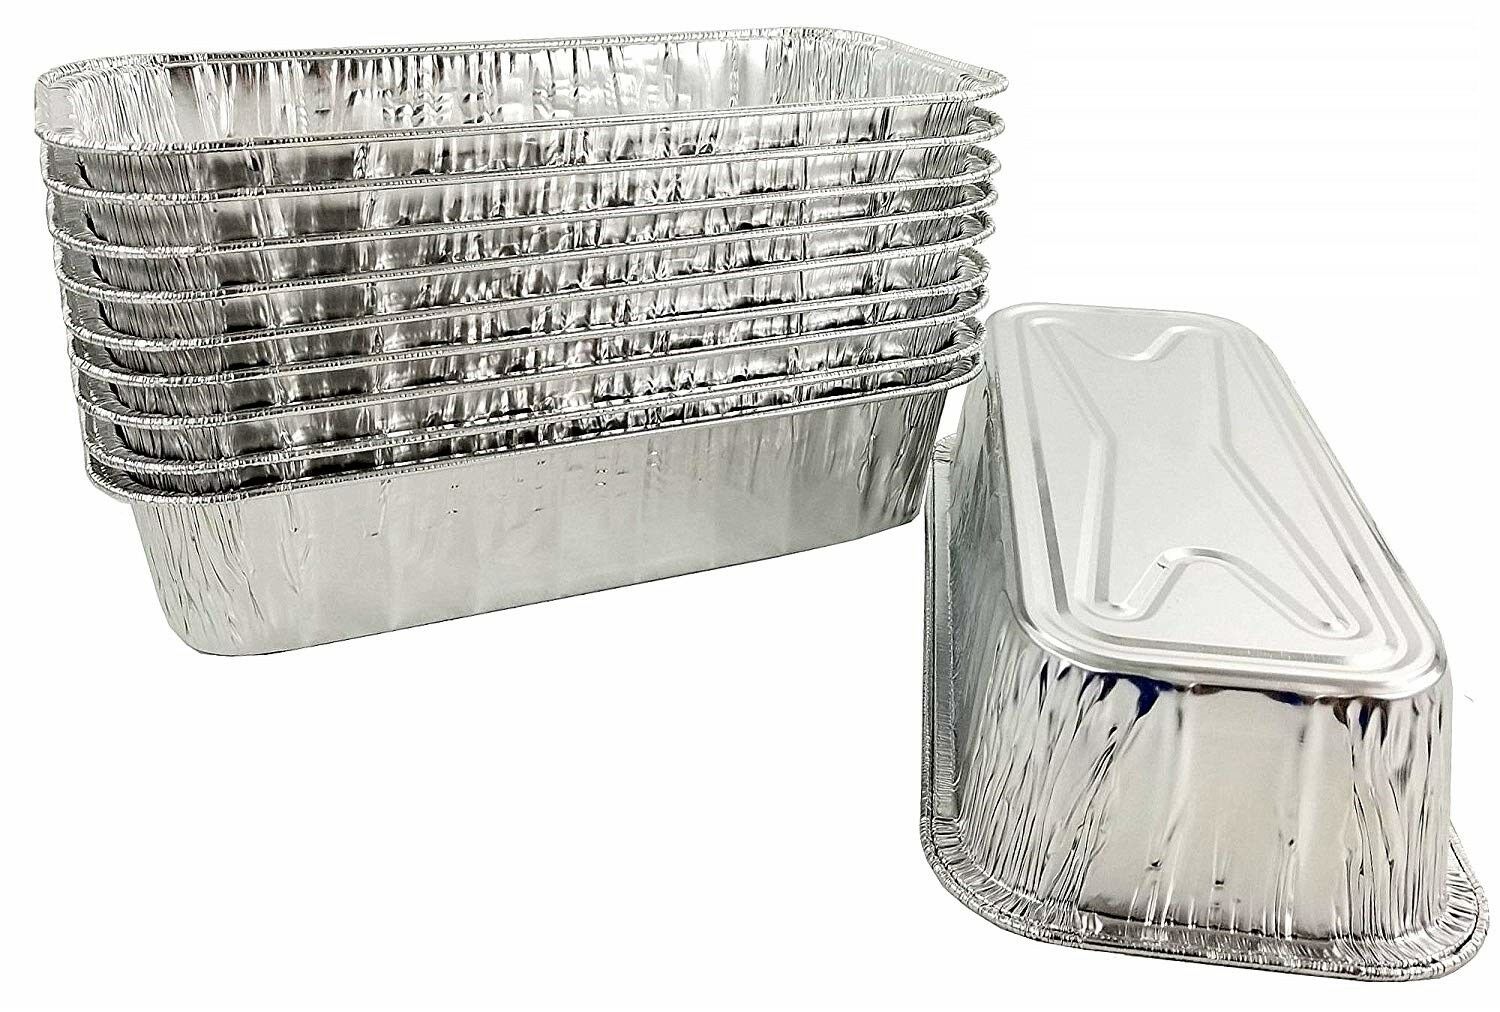  D&W Fine Pack A86 2 lb. Aluminum Foil Loaf/Bread Pan Tins  w/Foil Board Lid (Pack of 25 Sets) : Home & Kitchen